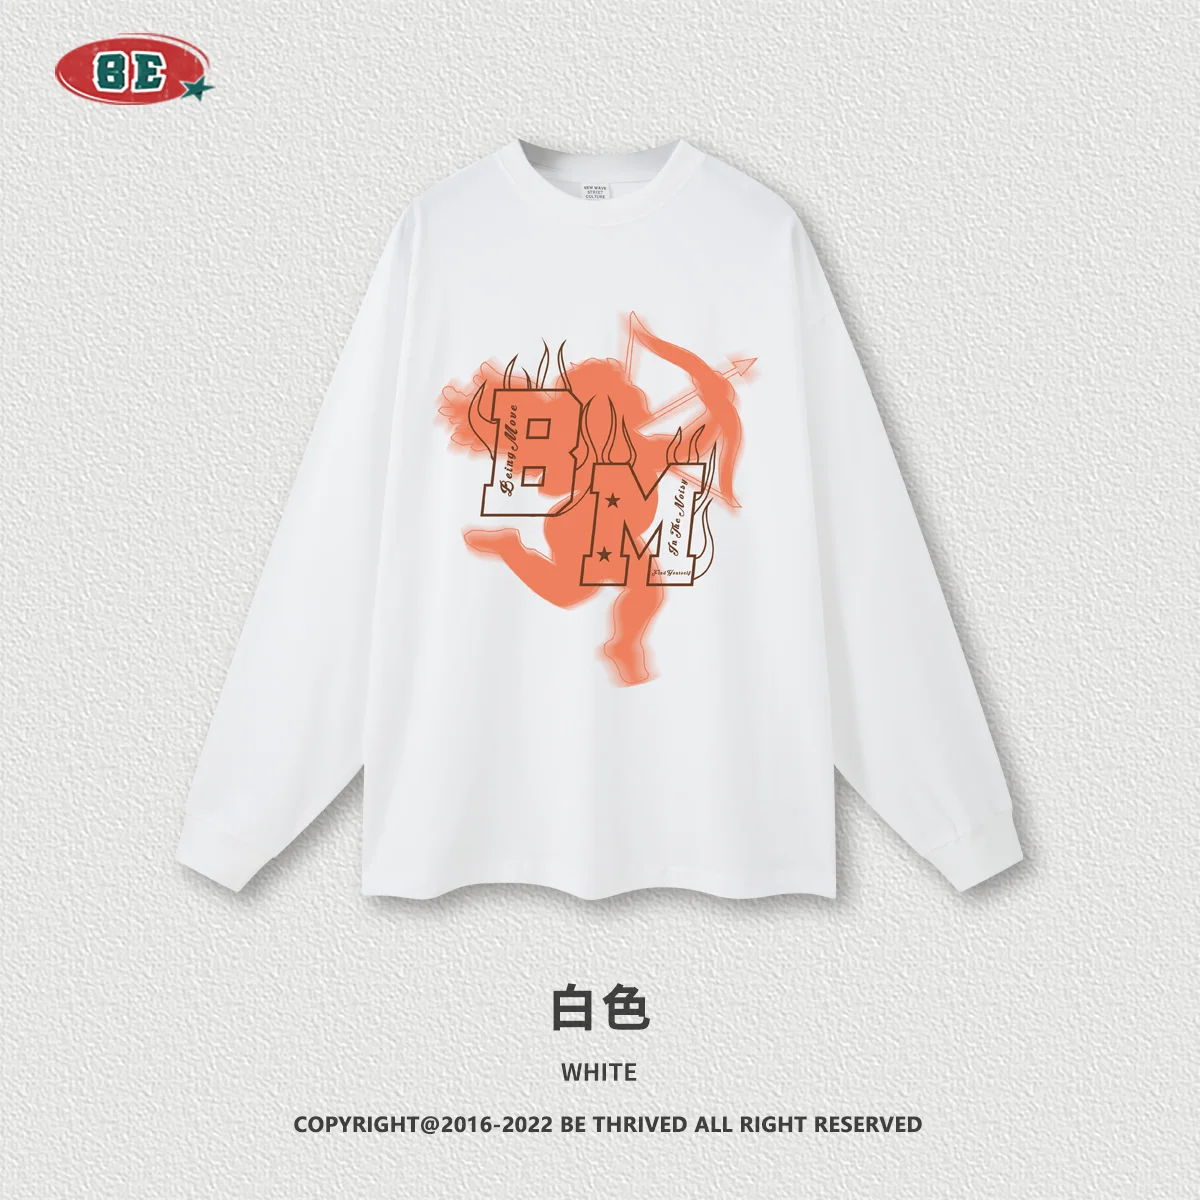 BE Men's Wear | Осень / Зима 2023, Американская Фарфорово-шикарная футболка с принтом Купидона С длинным рукавом, Оверсайз, Свободный Процесс Прямого распыления